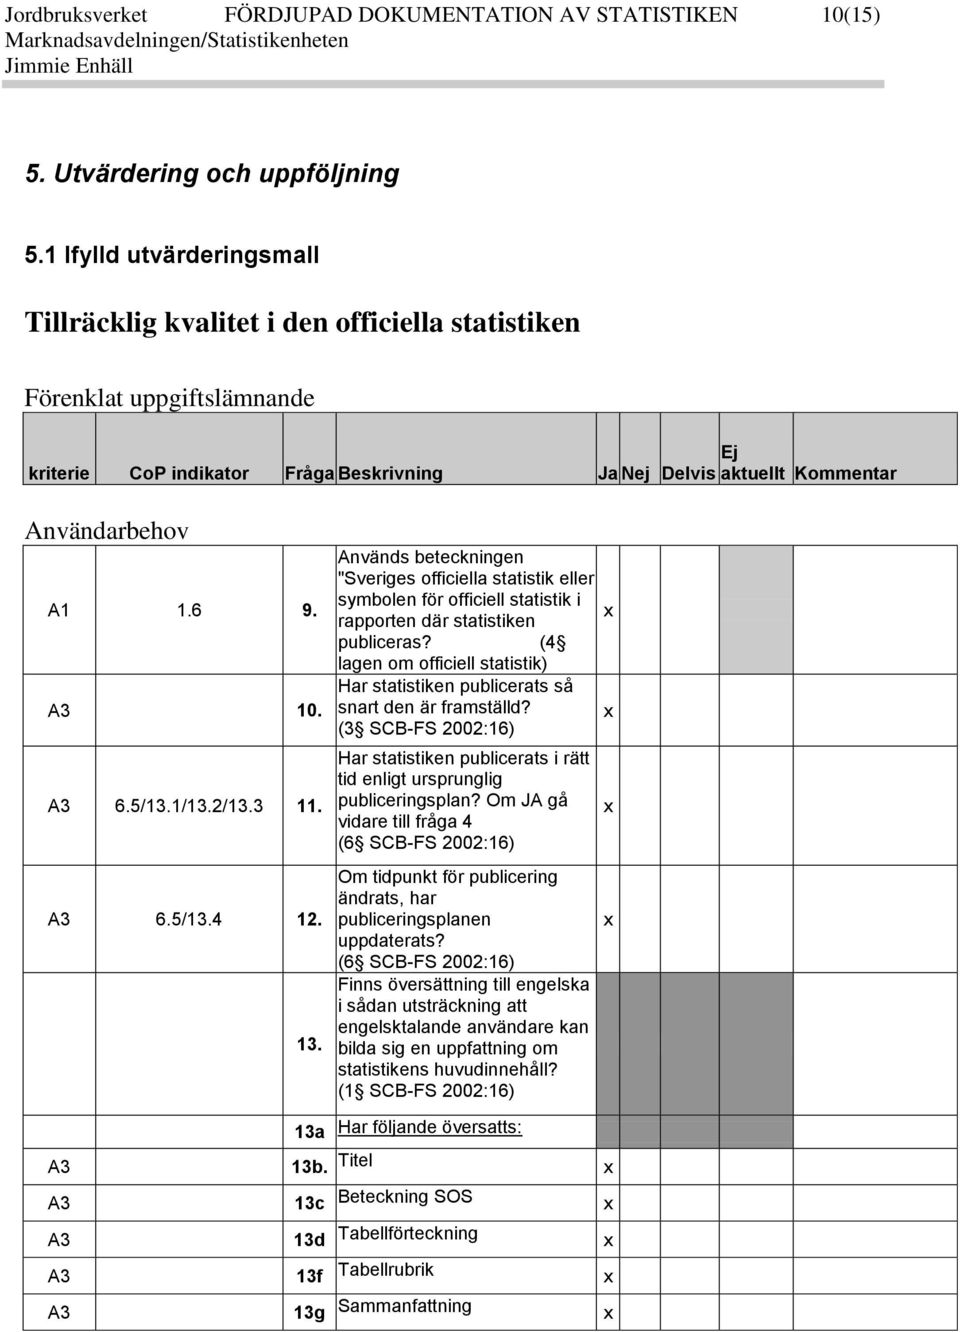 6 9. A3 10. A3 6.5/13.1/13.2/13.3 11. A3 6.5/13.4 12. 13. 13a Används beteckningen "Sveriges officiella statistik eller symbolen för officiell statistik i rapporten där statistiken publiceras?